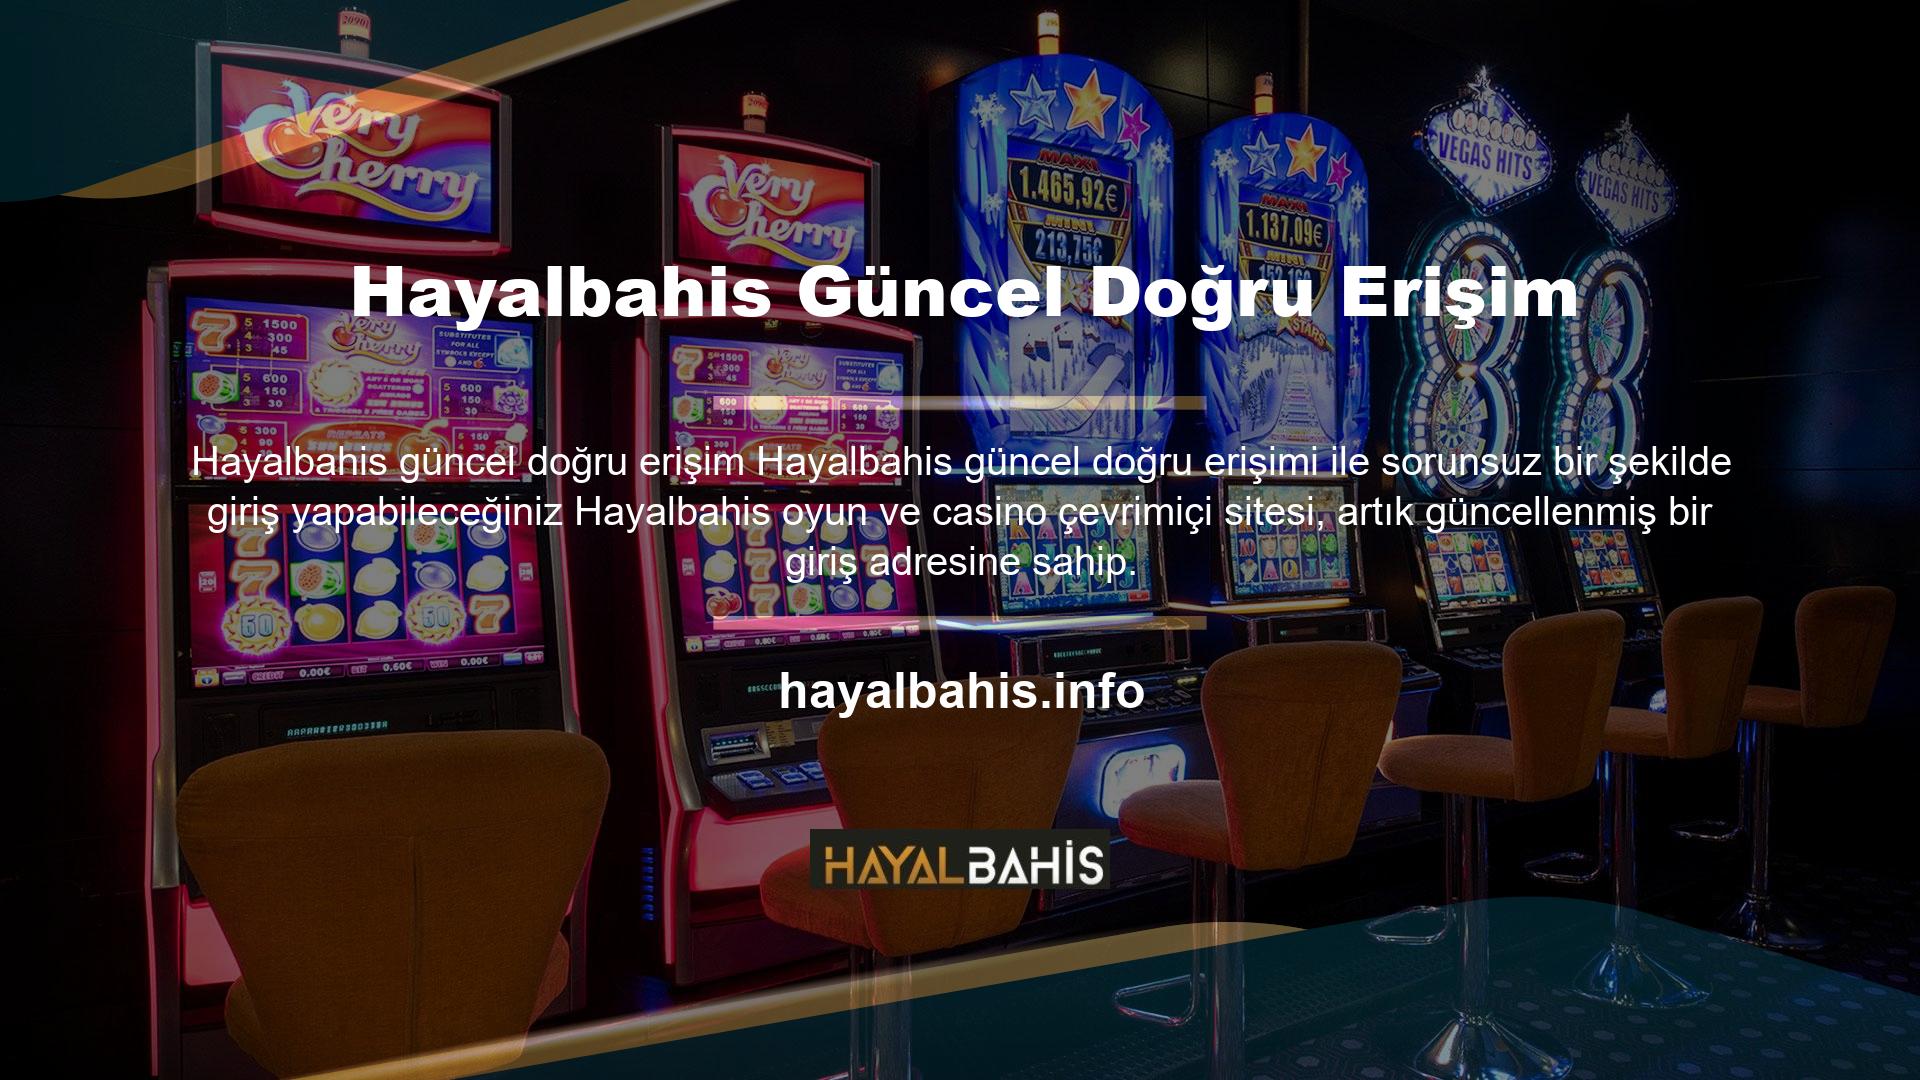 Türkiye'de çevrimiçi casinonun yasa dışı olması ve yabancı casino sitelerinin varlığı nedeniyle mevcut adresleri haftanın birkaç günü engellenmektedir